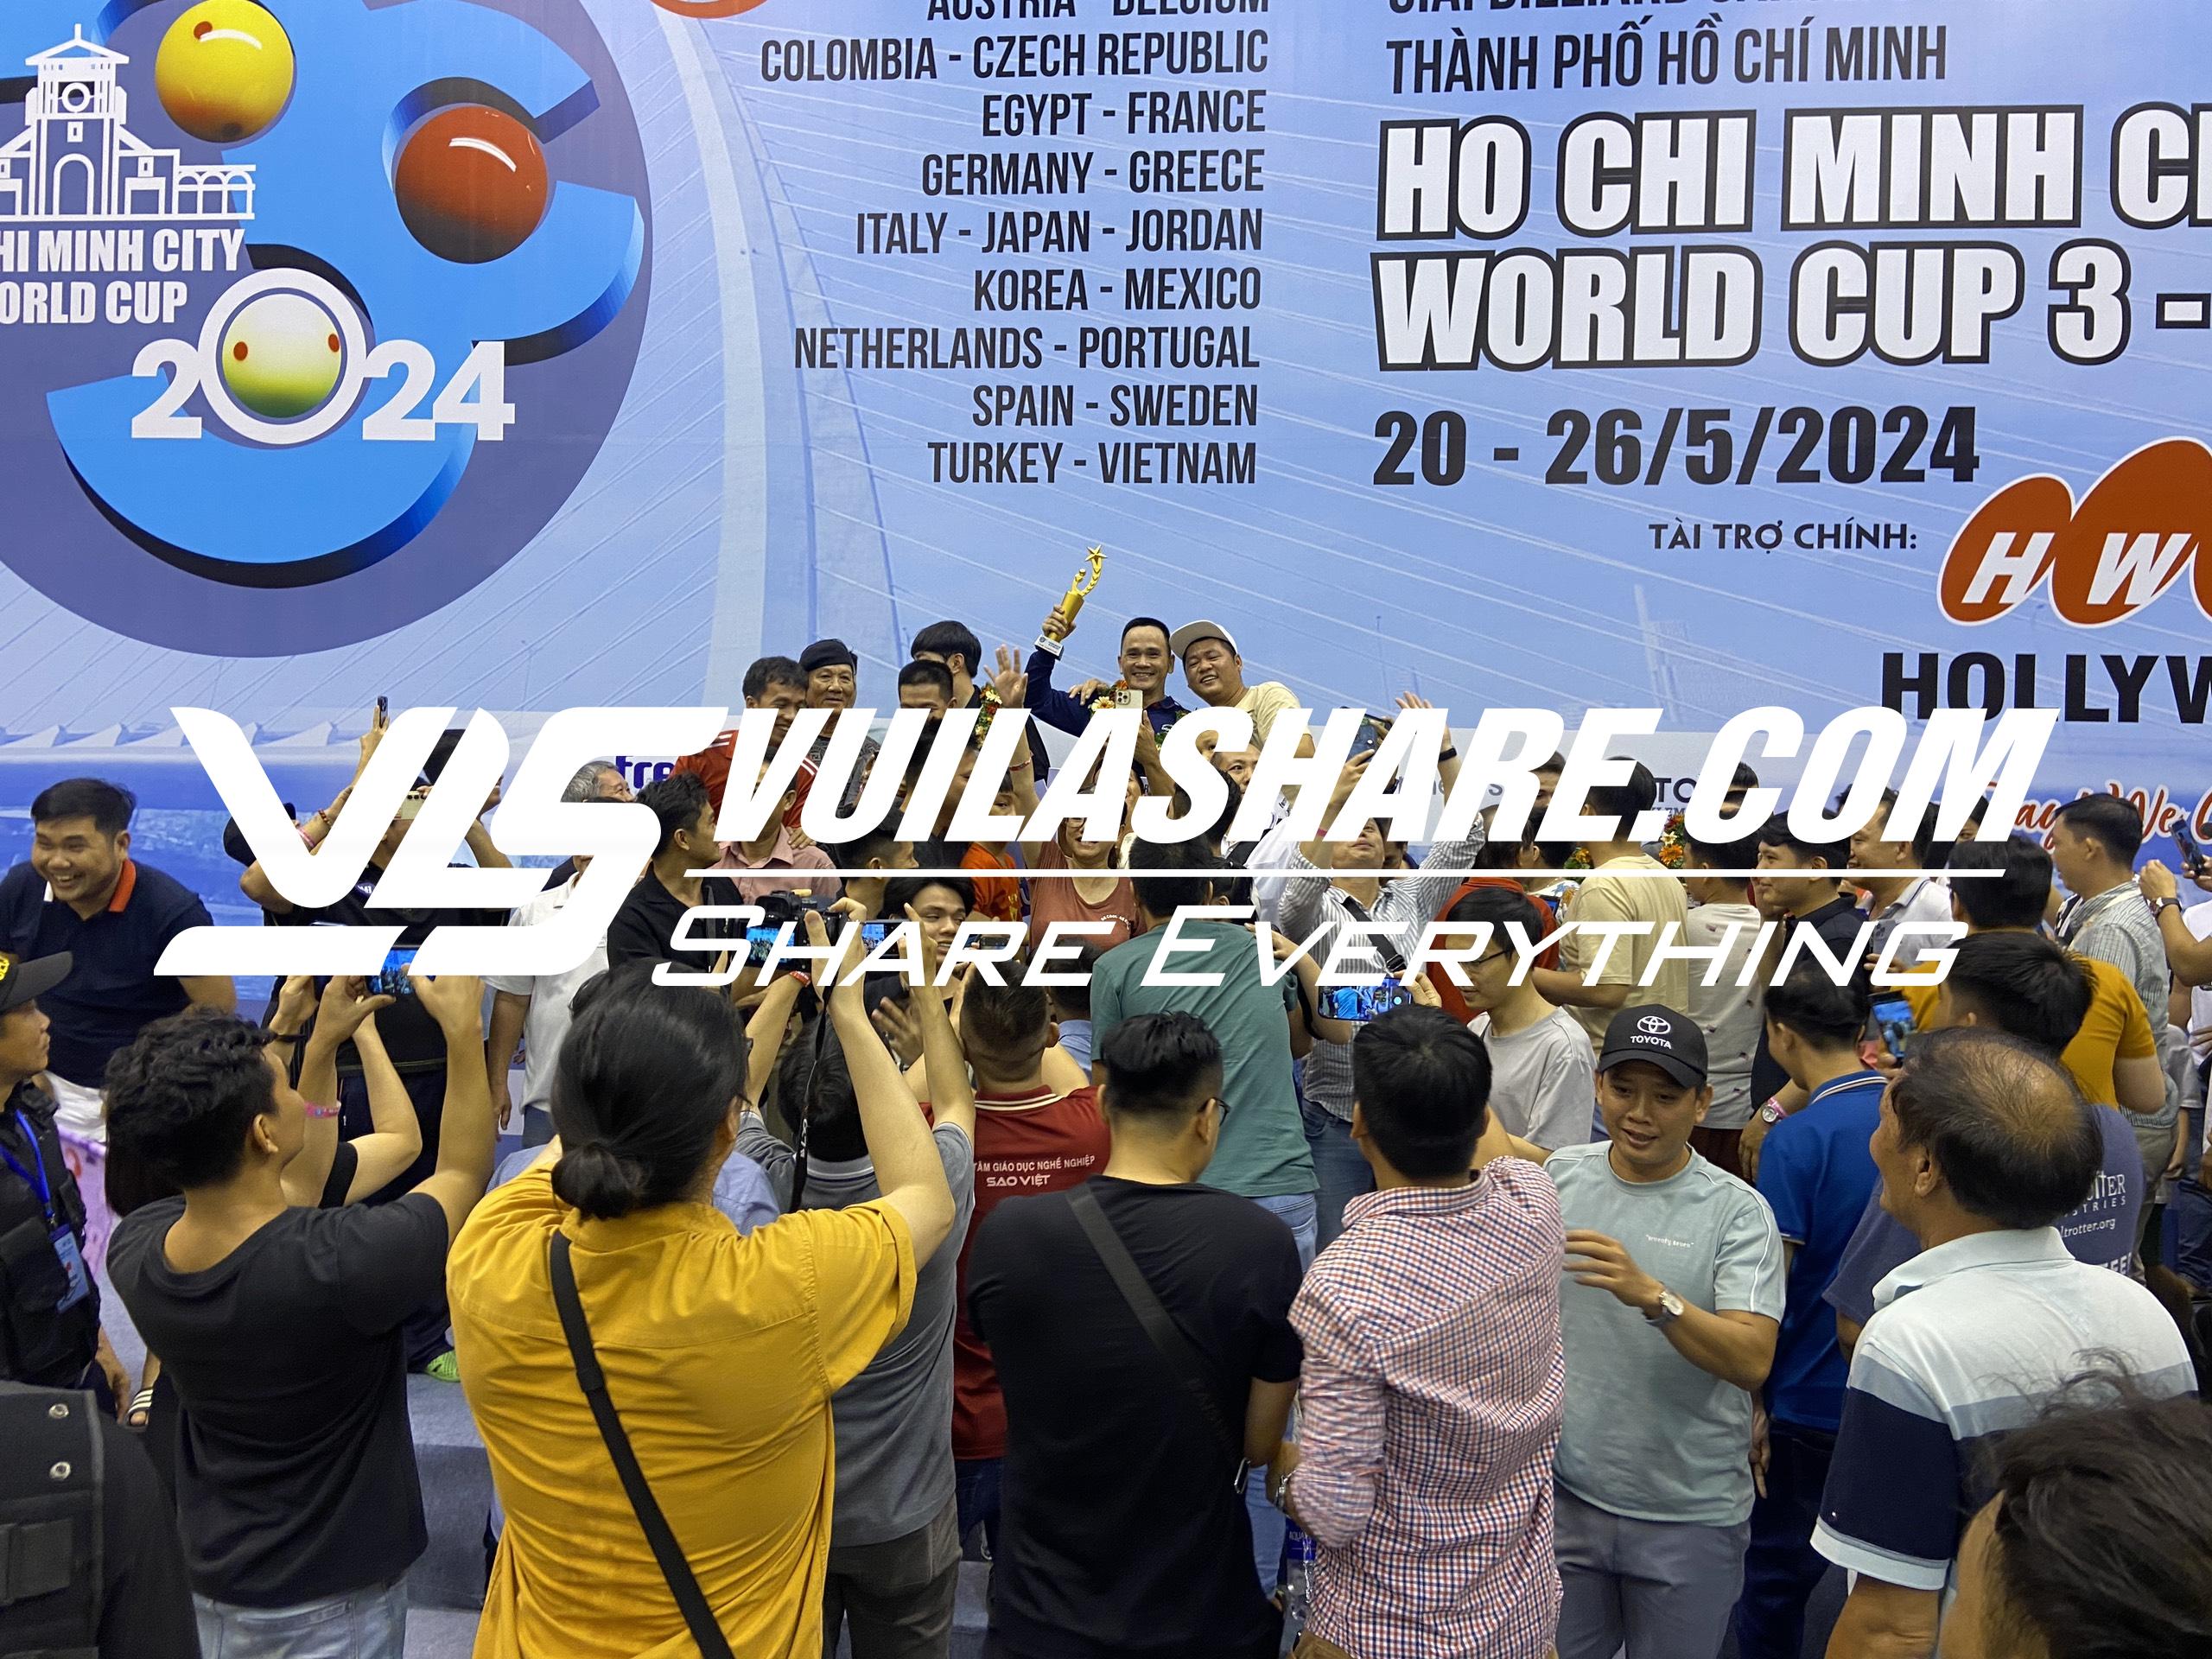 Những khoảnh khắc rất khó quên của tay cơ Trần Đức Minh, tân vô địch World Cup- Ảnh 8.